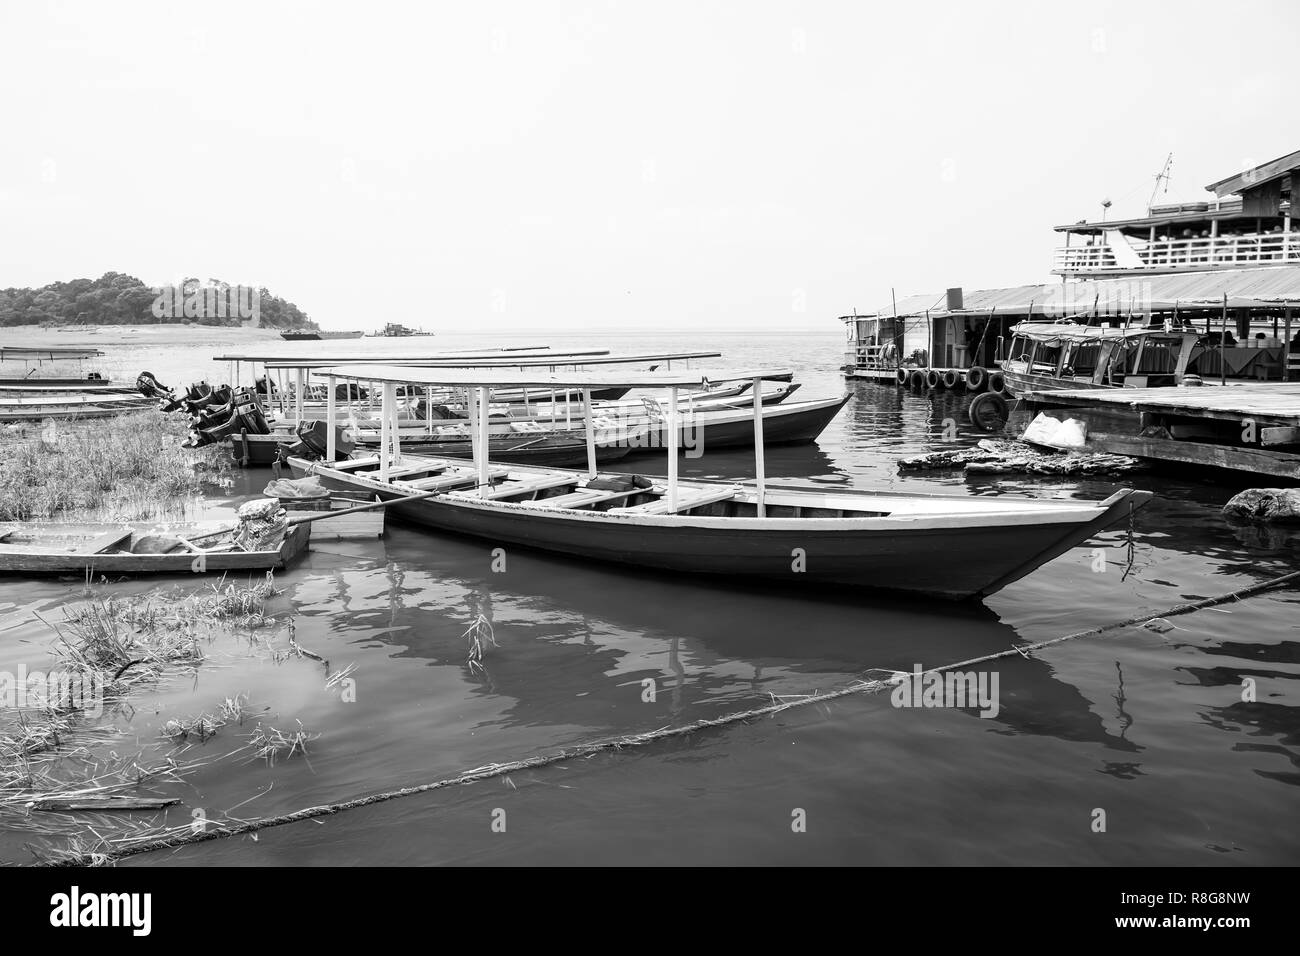 Motorboote und Boote am Meer in Manaus, Brasilien. Wasser- und Schiff. Sommer Urlaub und Meer reisen. Fernweh Abenteuer und Entdeckung. Stockfoto